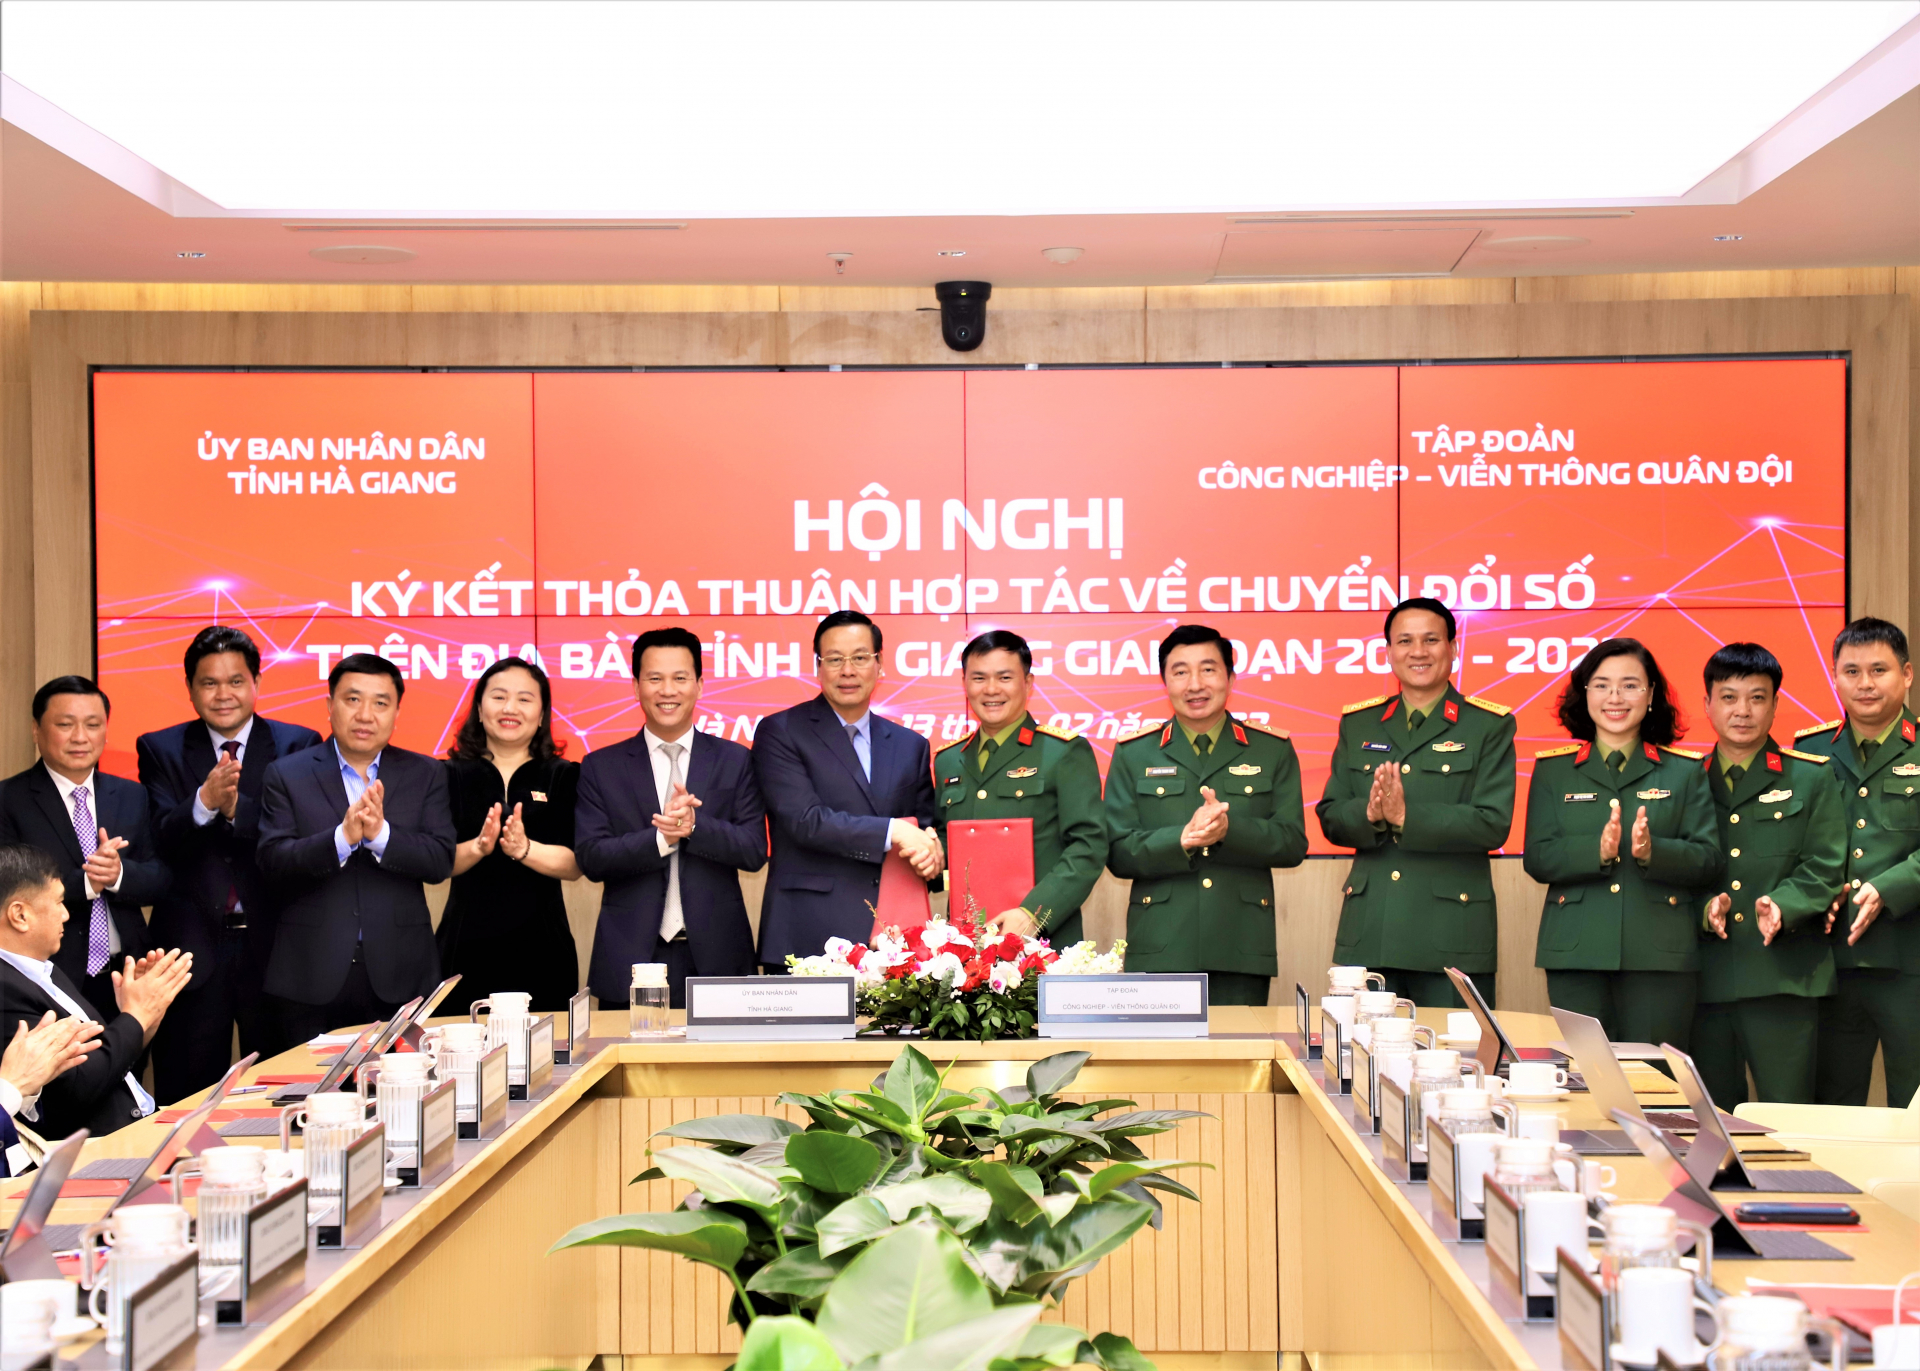 Các đồng chí lãnh đạo tỉnh Hà Giang và Tập đoàn Viettel chứng kiến Chủ tịch kiêm Tổng Giám đốc Tập đoàn Viettel và Chủ tịch UBND tỉnh ký kết thỏa thuận hợp tác về chuyển đổi số